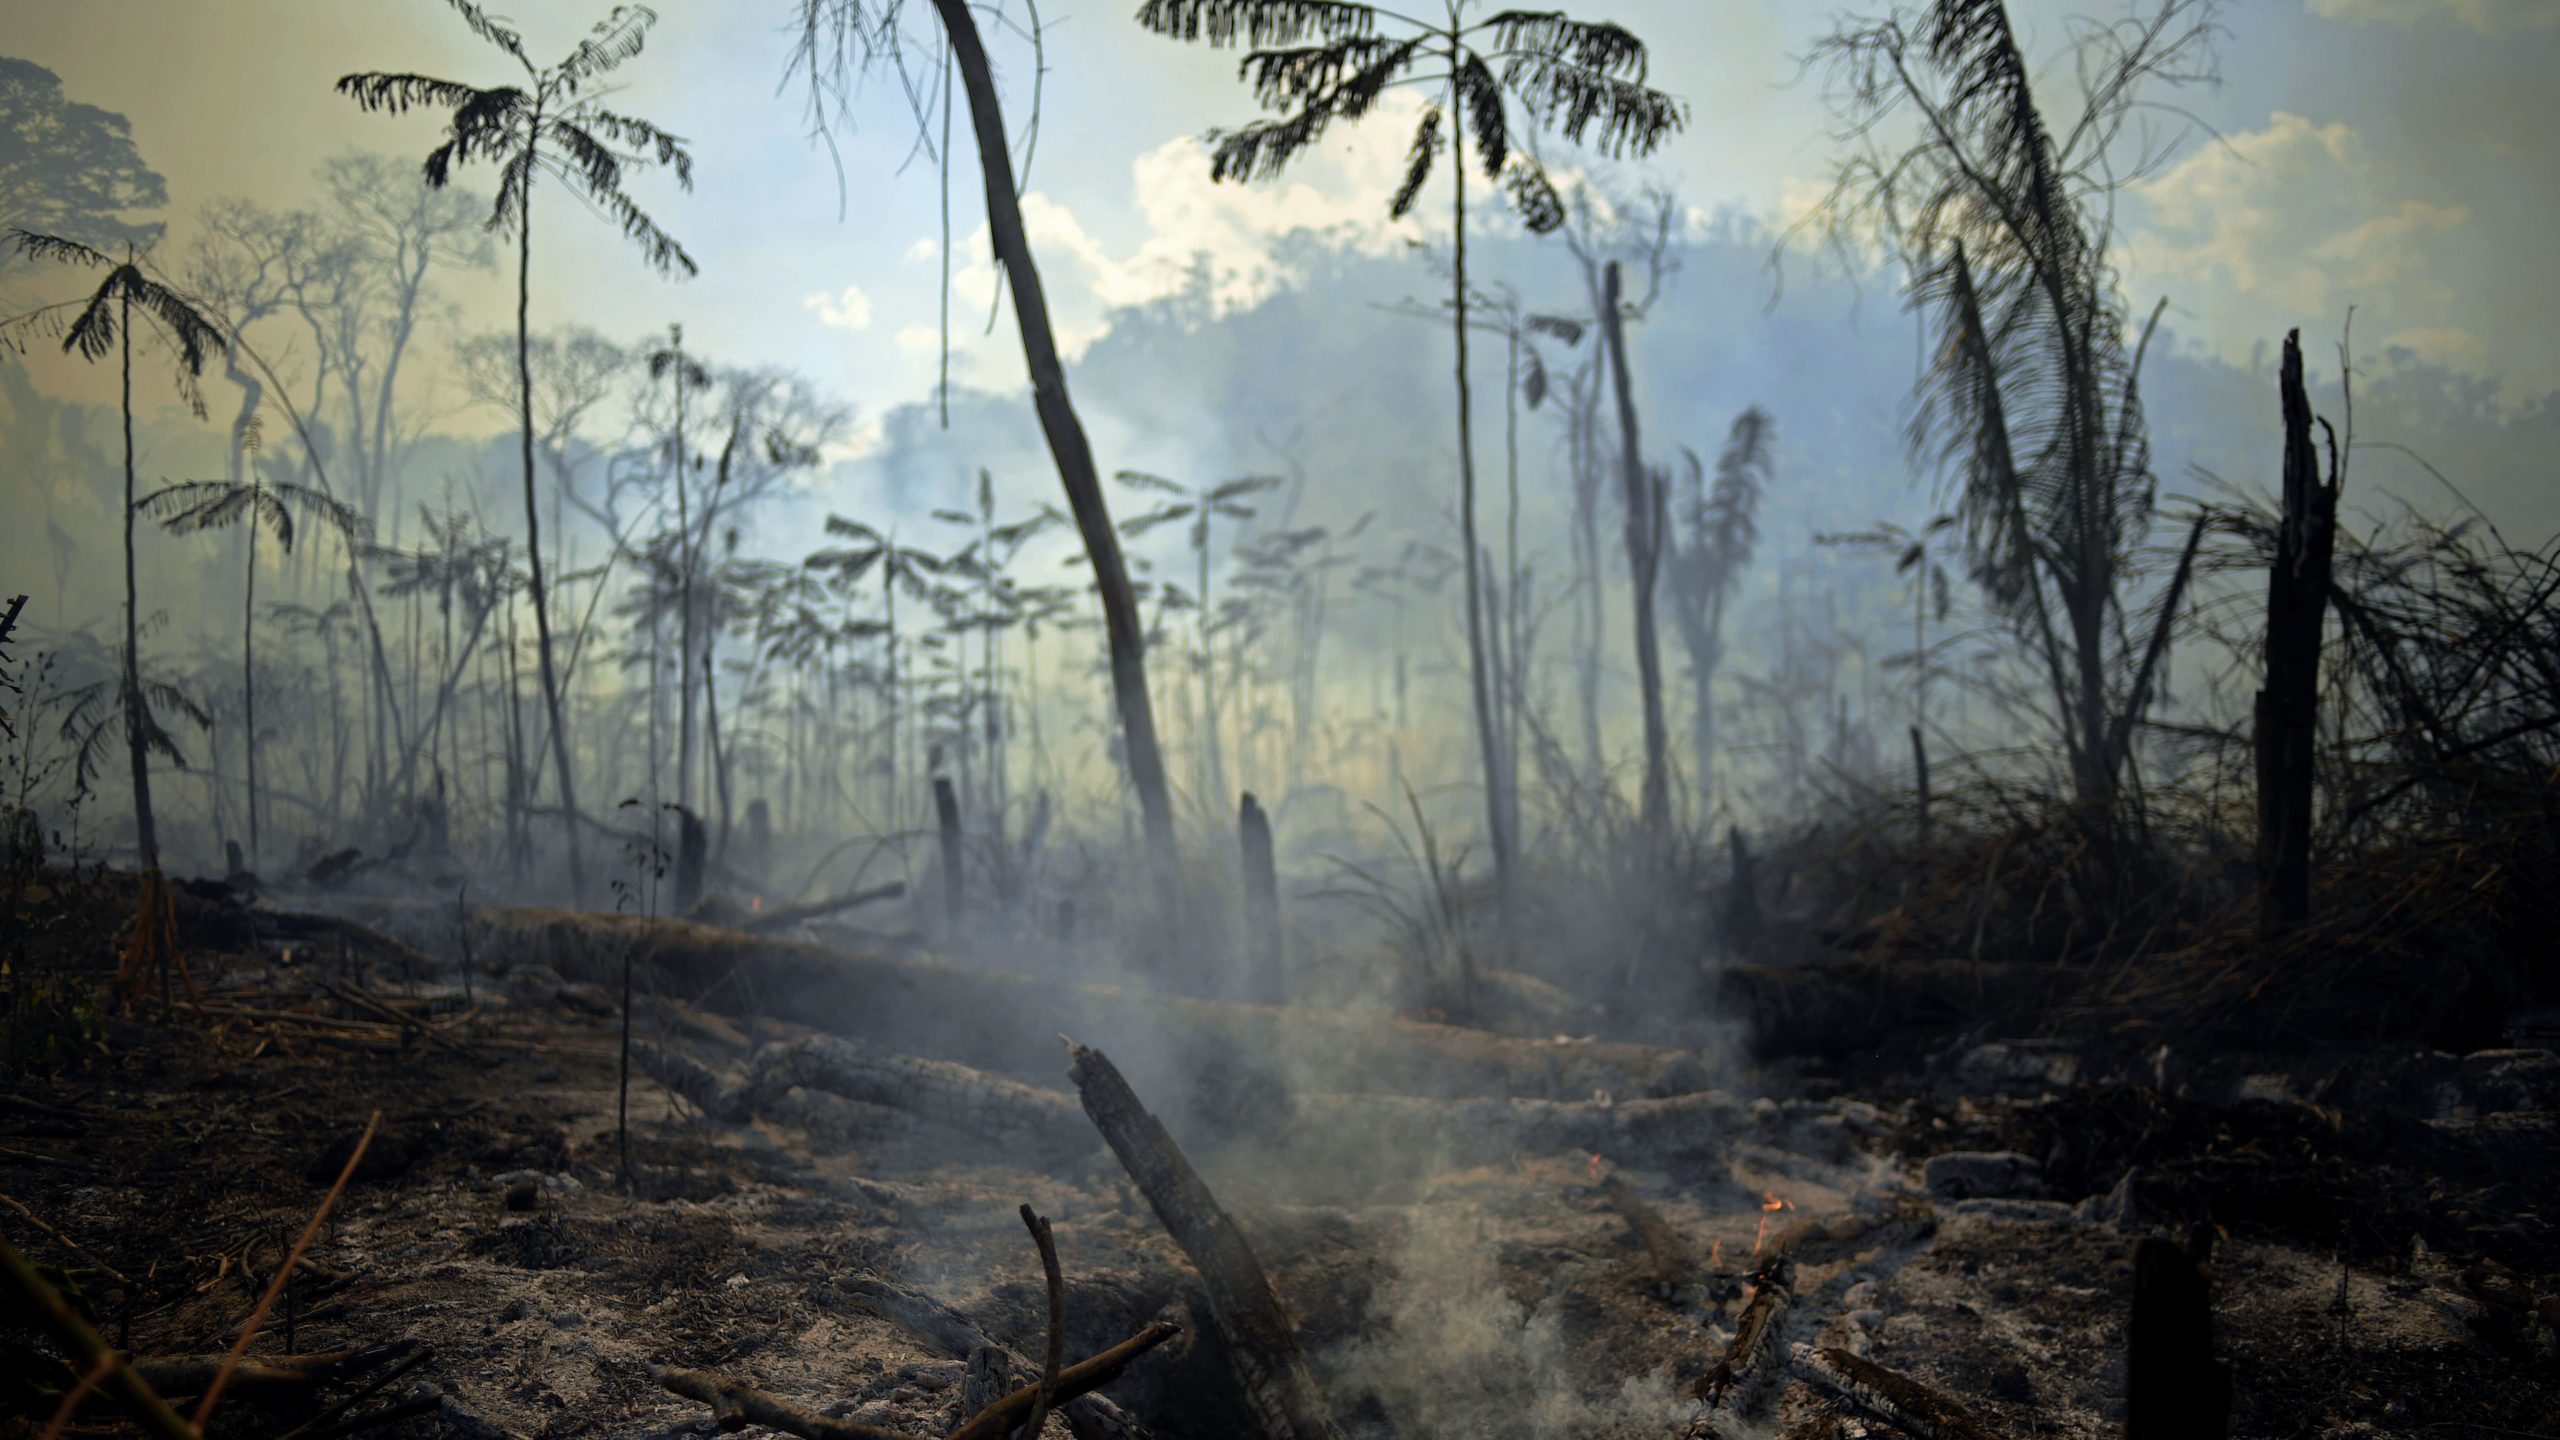 Área de floresta amazônica no Pará foi queimada. Crédito: Carl de Souza/Getty Images